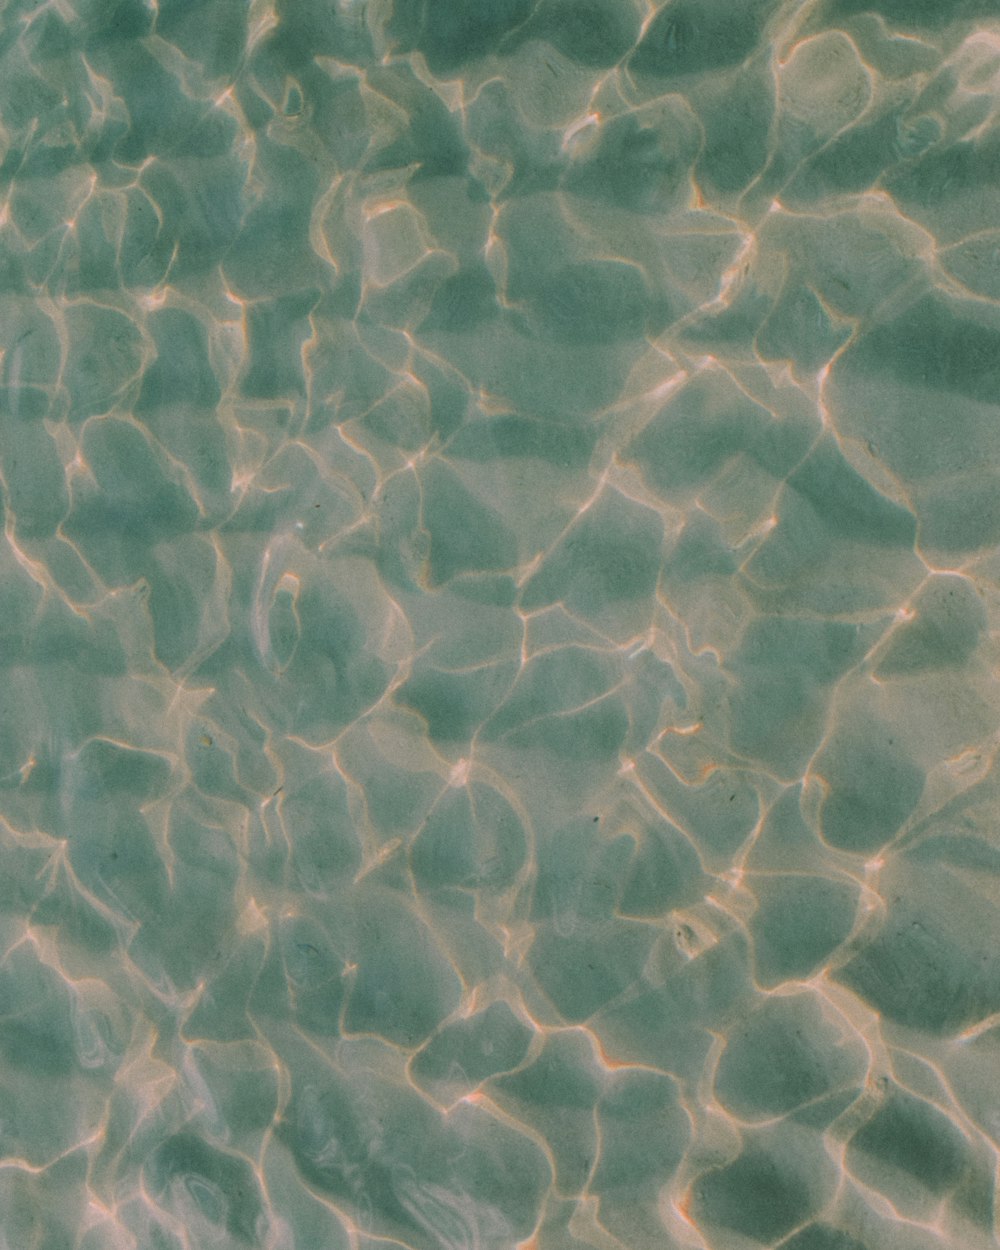 Das Wasser reflektiert das Sonnenlicht auf dem Sand